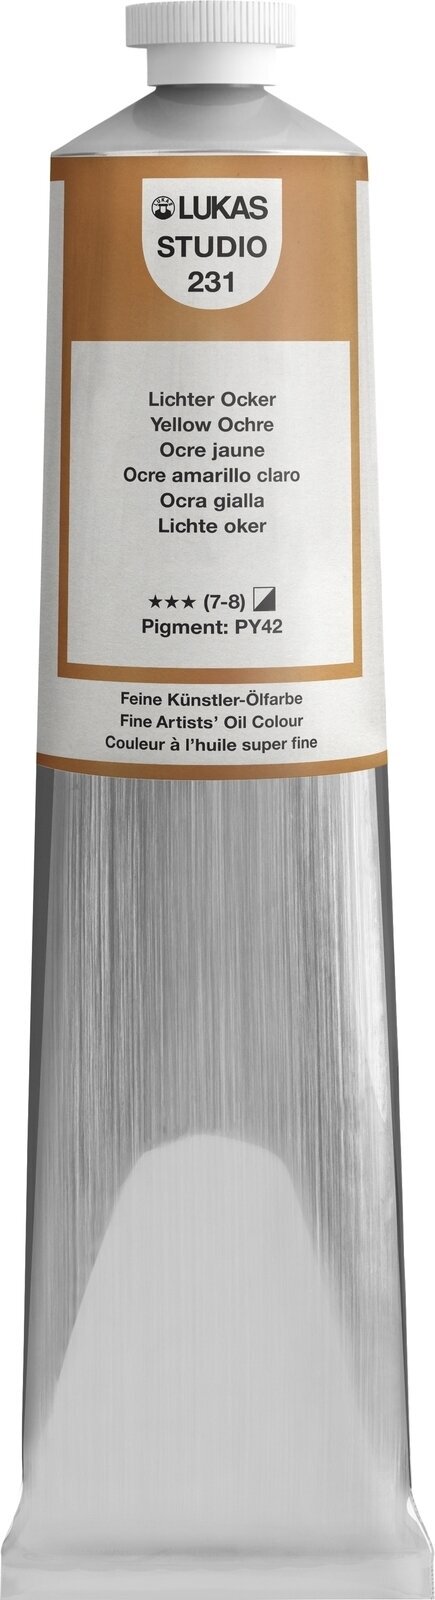 Ölfarbe Lukas Studio Oil Paint Aluminium Tube Ölgemälde Yellow Ochre 200 ml 1 Stck